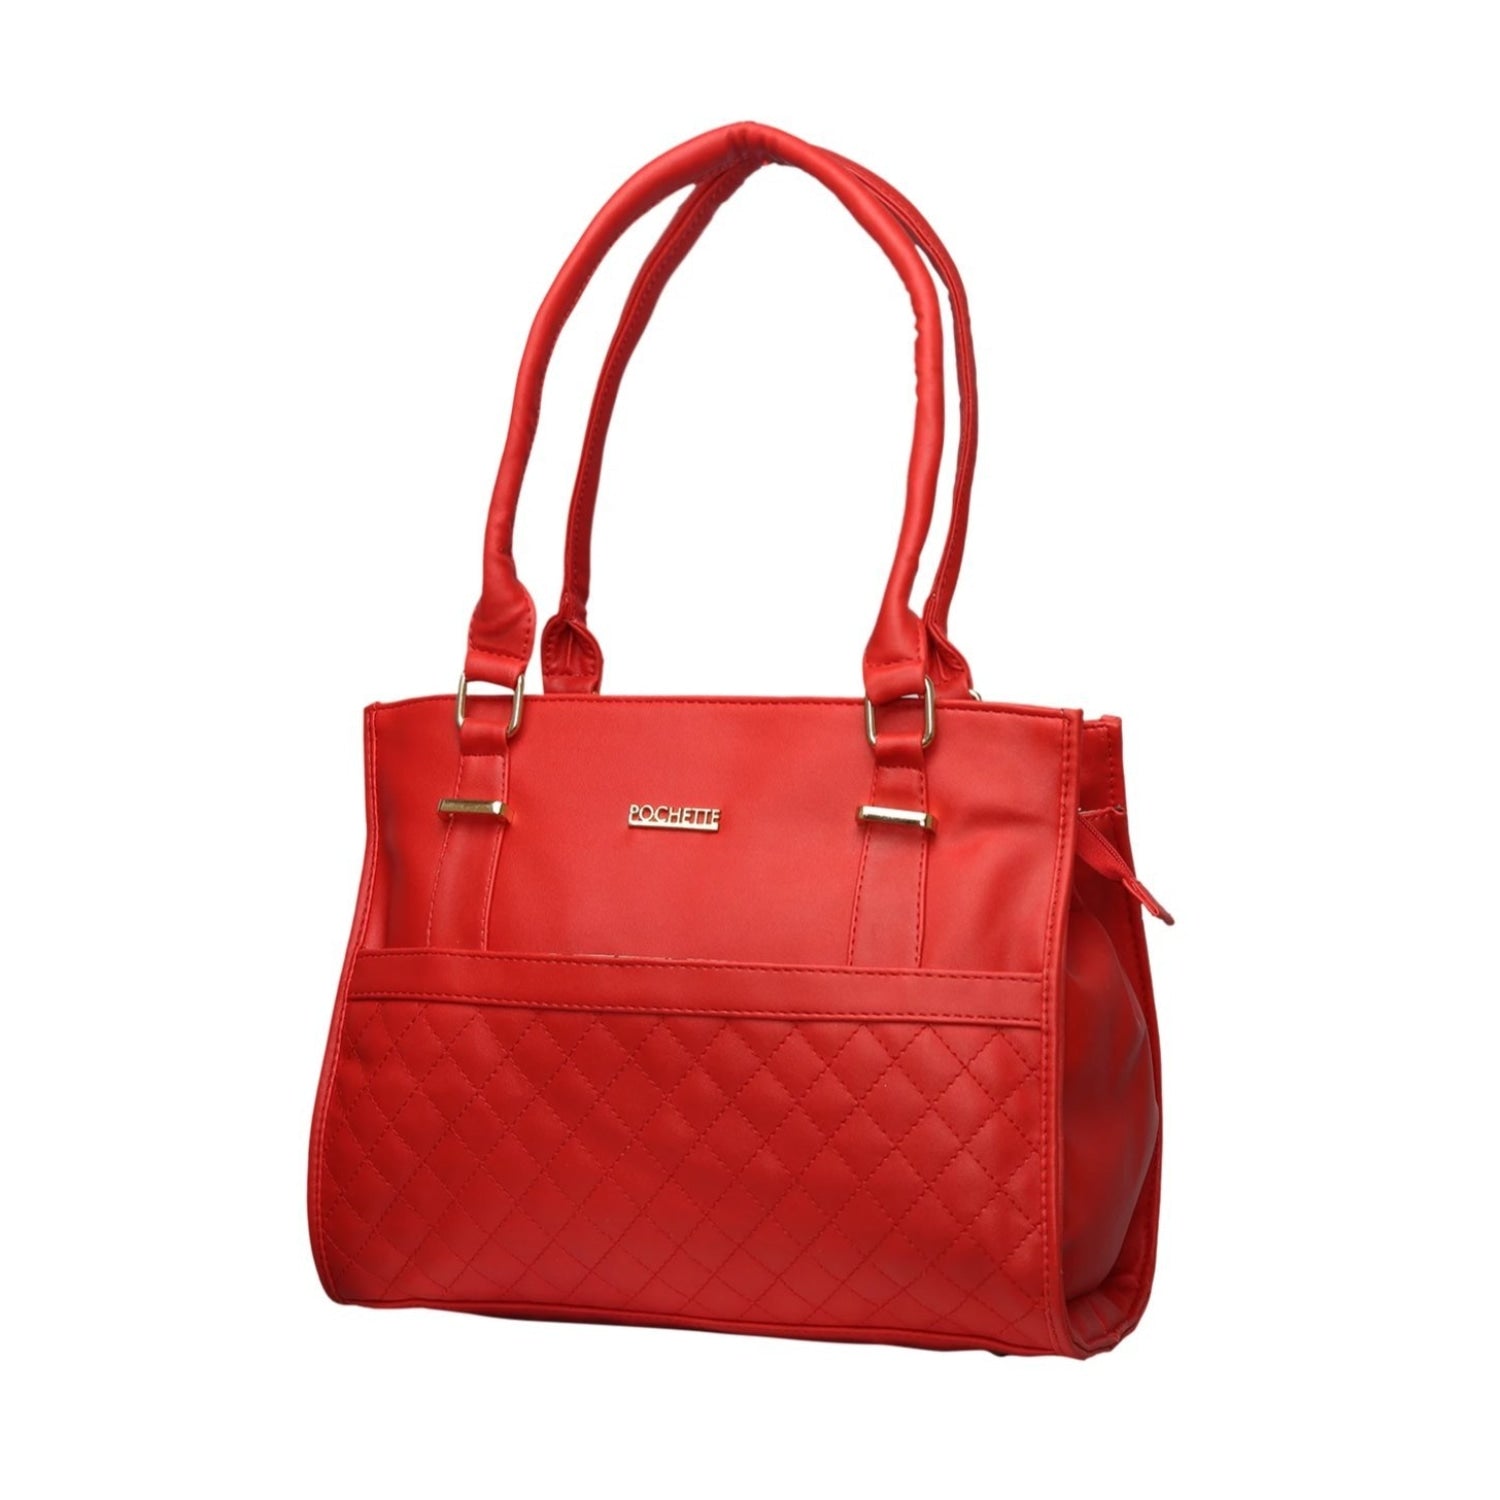 Pochette Red Handbag. - HANDBAGS